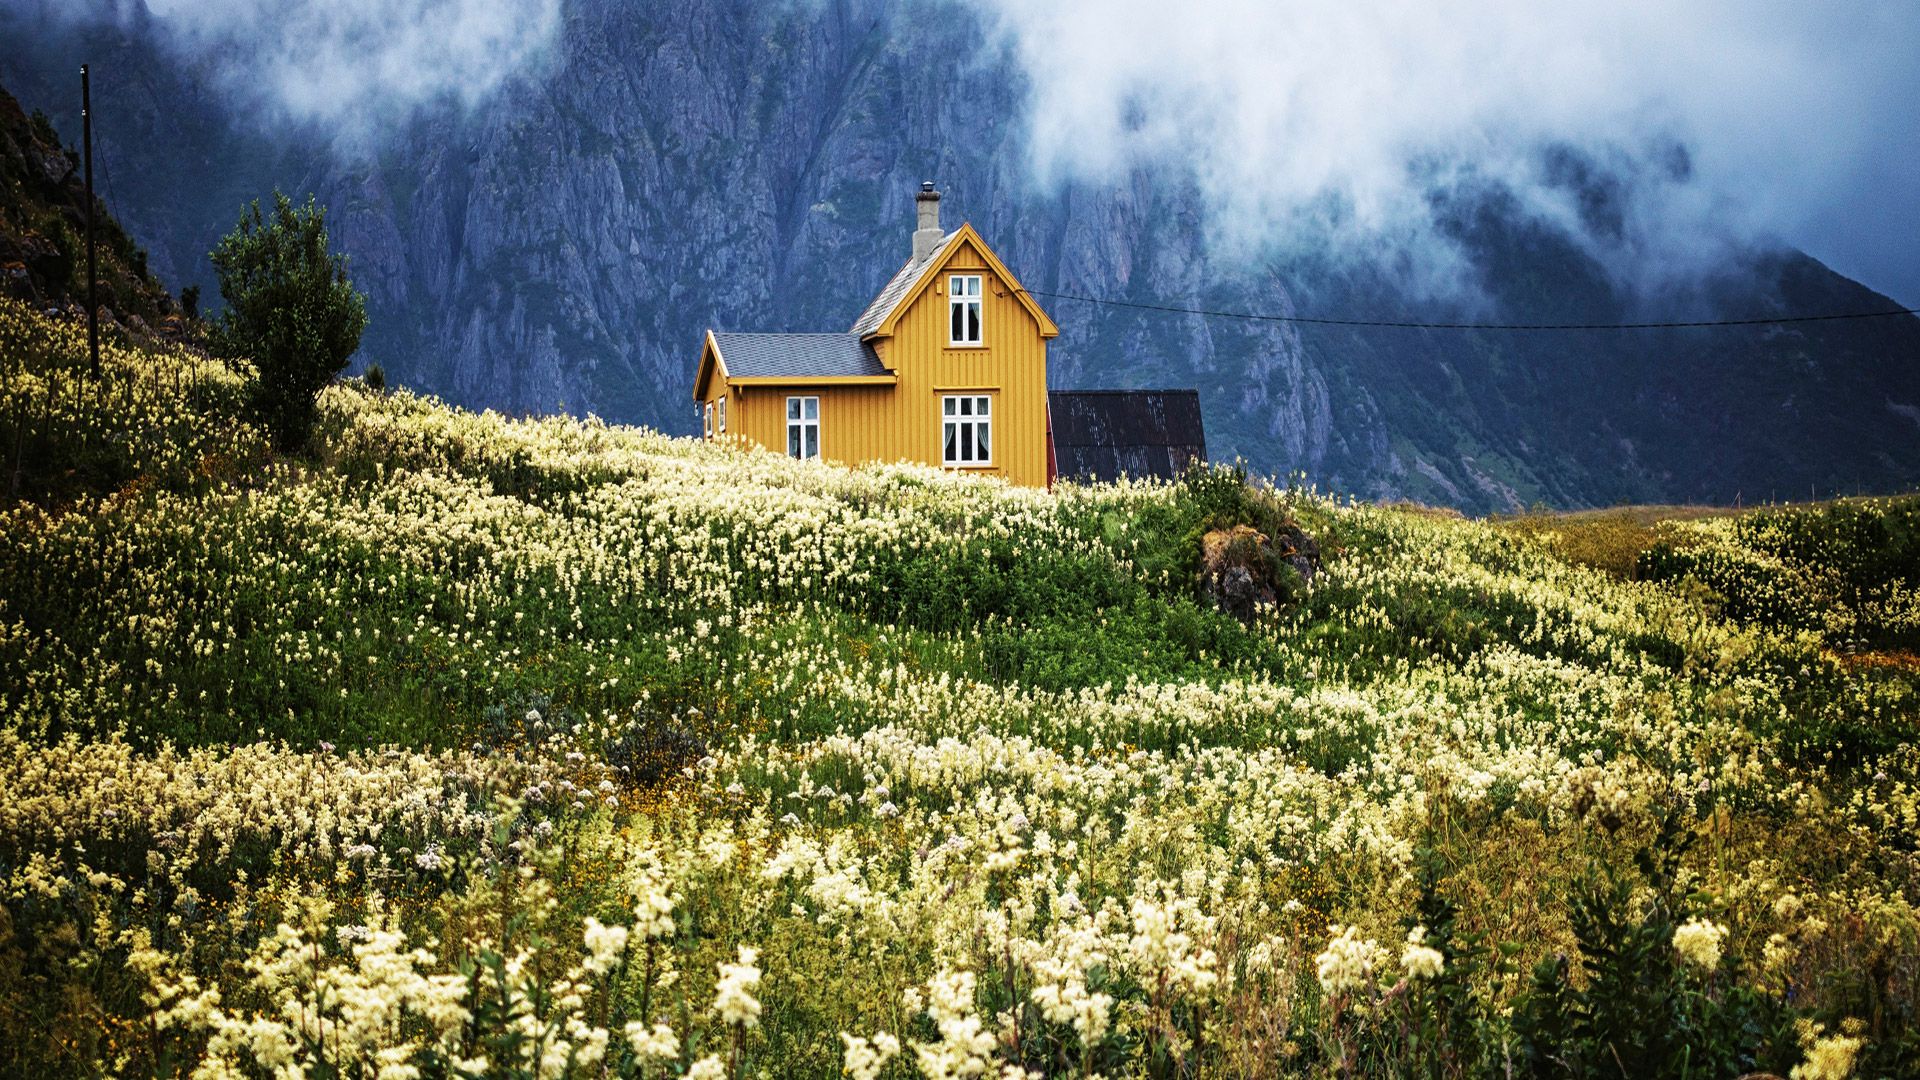 Maison jaune au milieu des montagnes